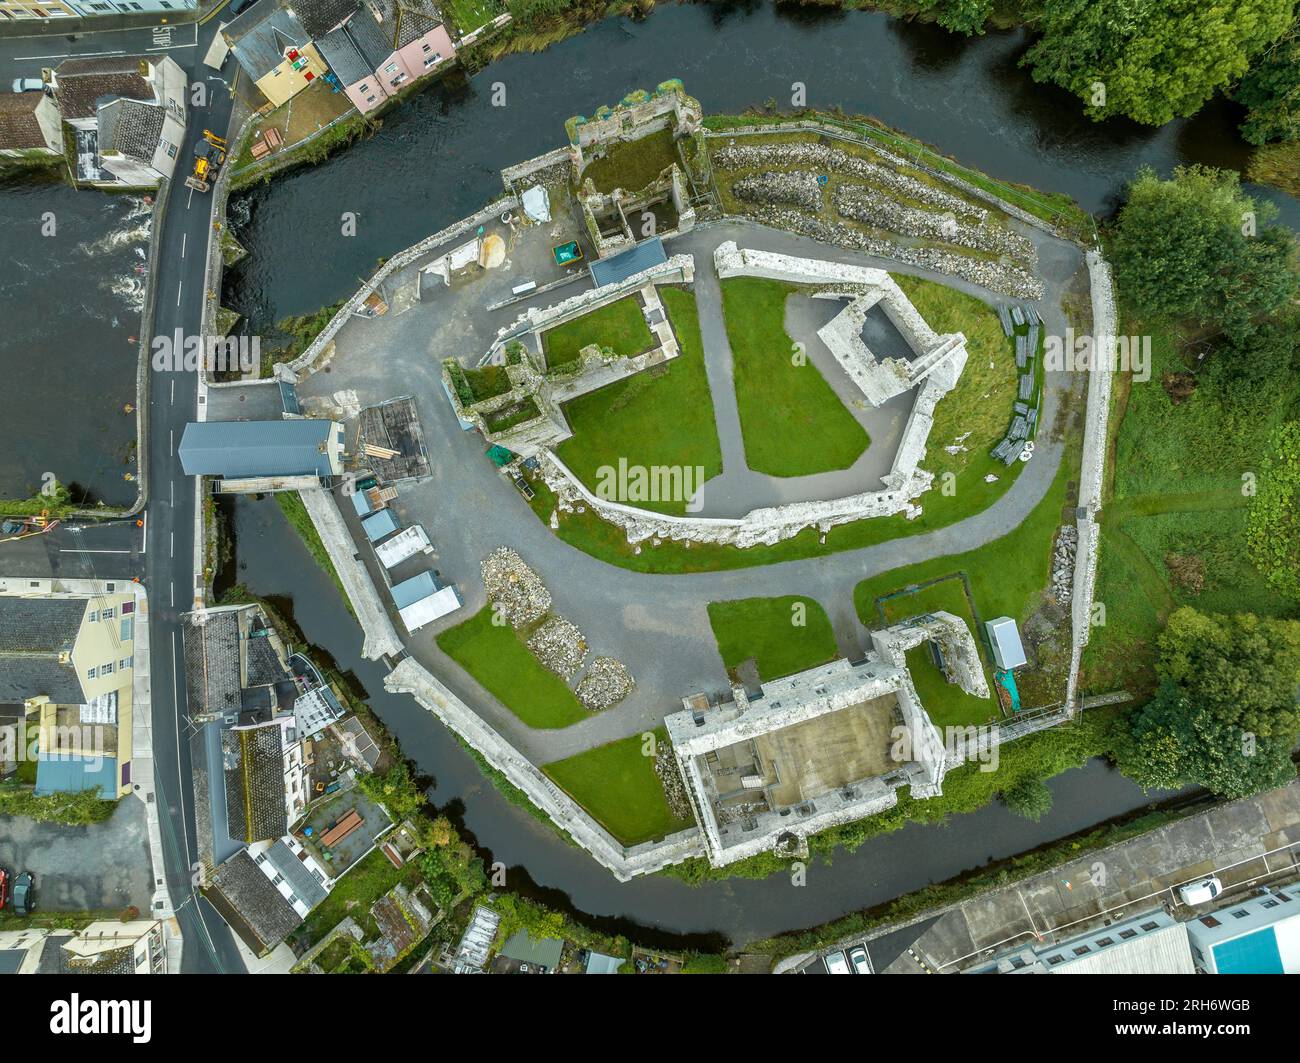 Vista aerea del castello di Desmond ad Askeaton, Irlanda, nella contea di Limerick sul fiume Deel, con la Gothic Banqueting Hall, la più bella costruzione secolare medievale Foto Stock